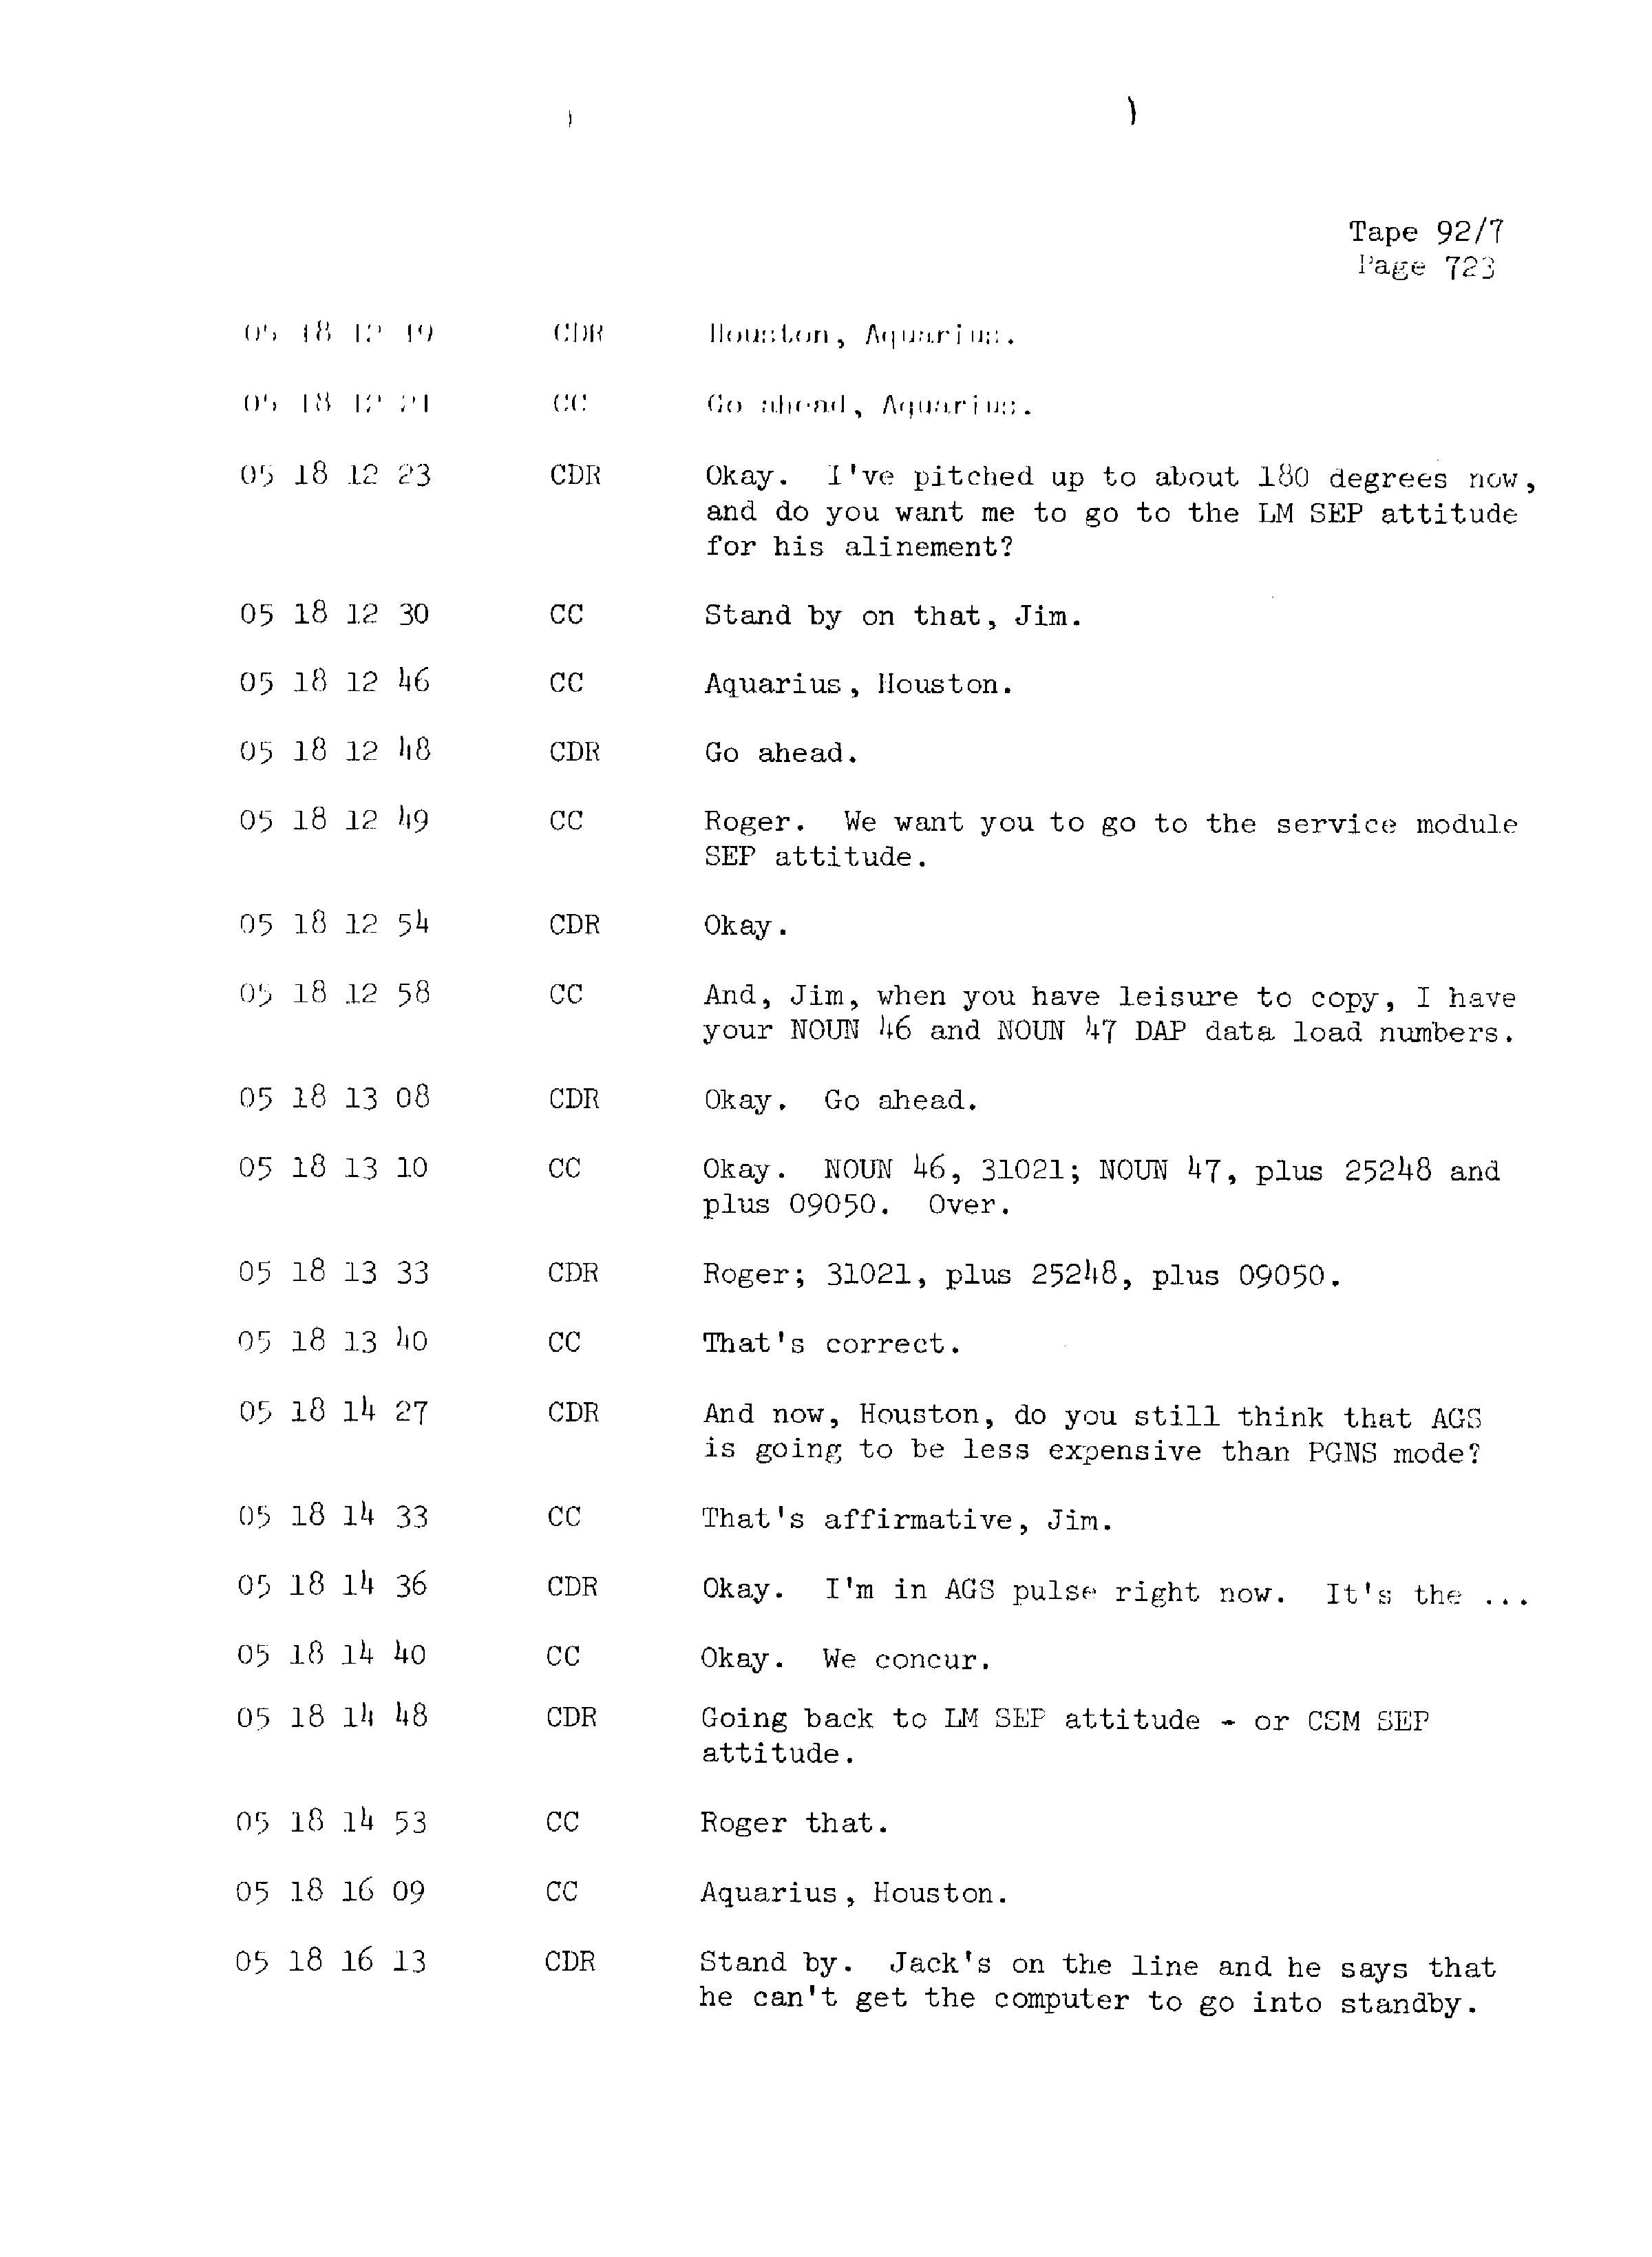 Page 730 of Apollo 13’s original transcript